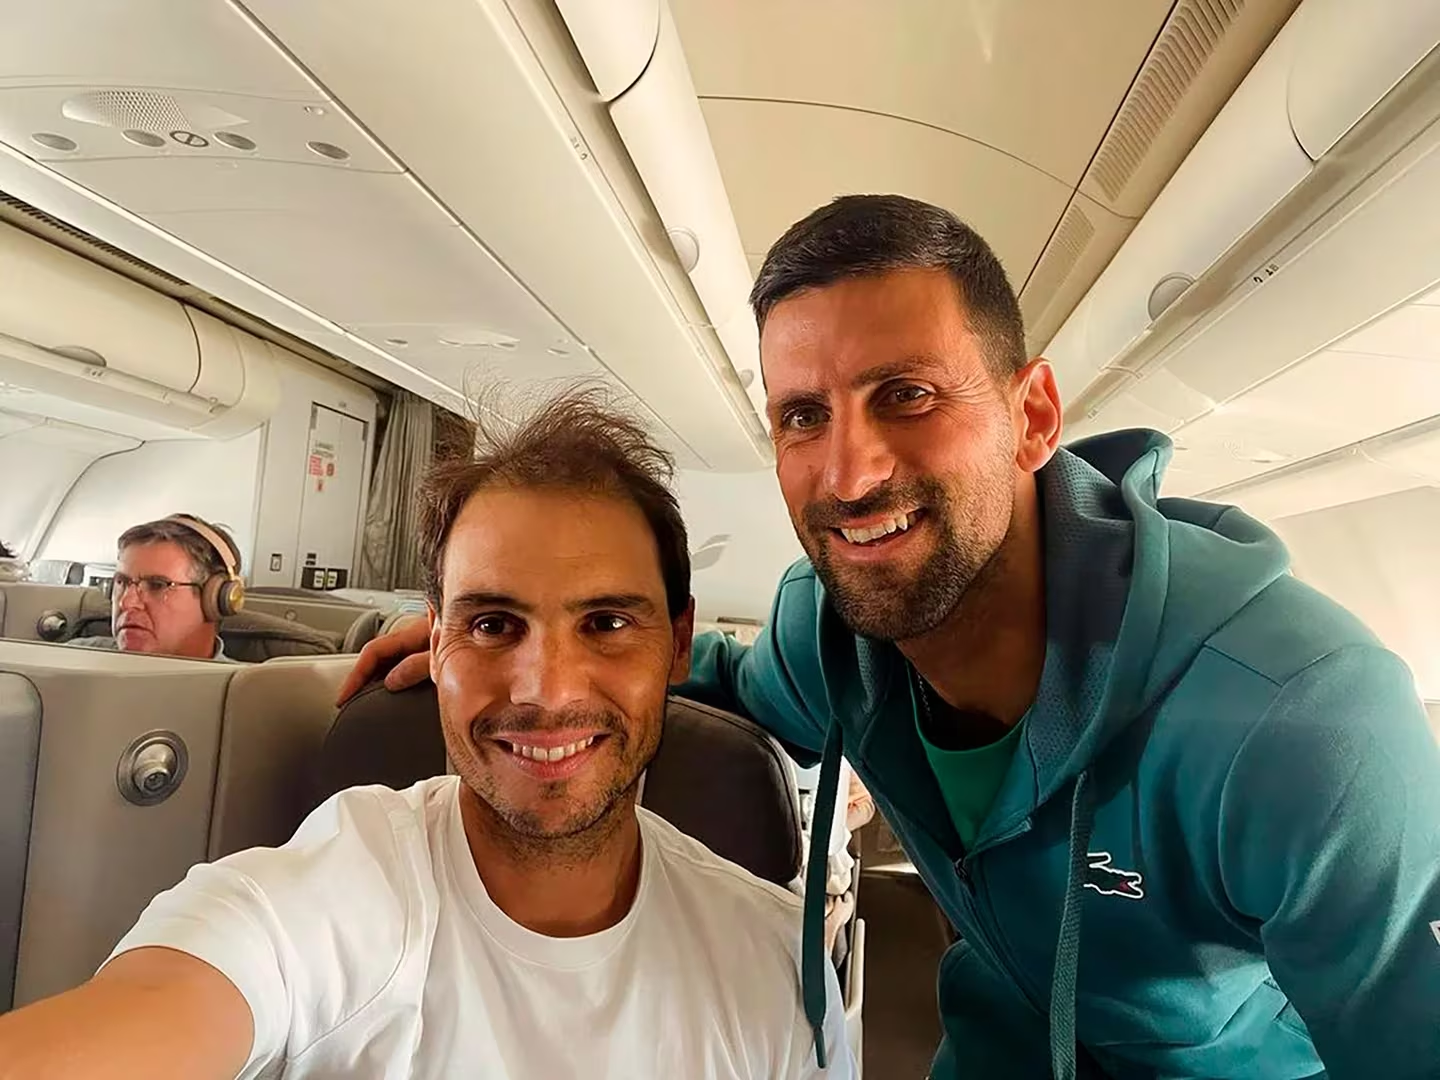 La “imagen del año” entre Rafa Nadal y Novak Djokovic en un inesperado encuentro a bordo de un avión